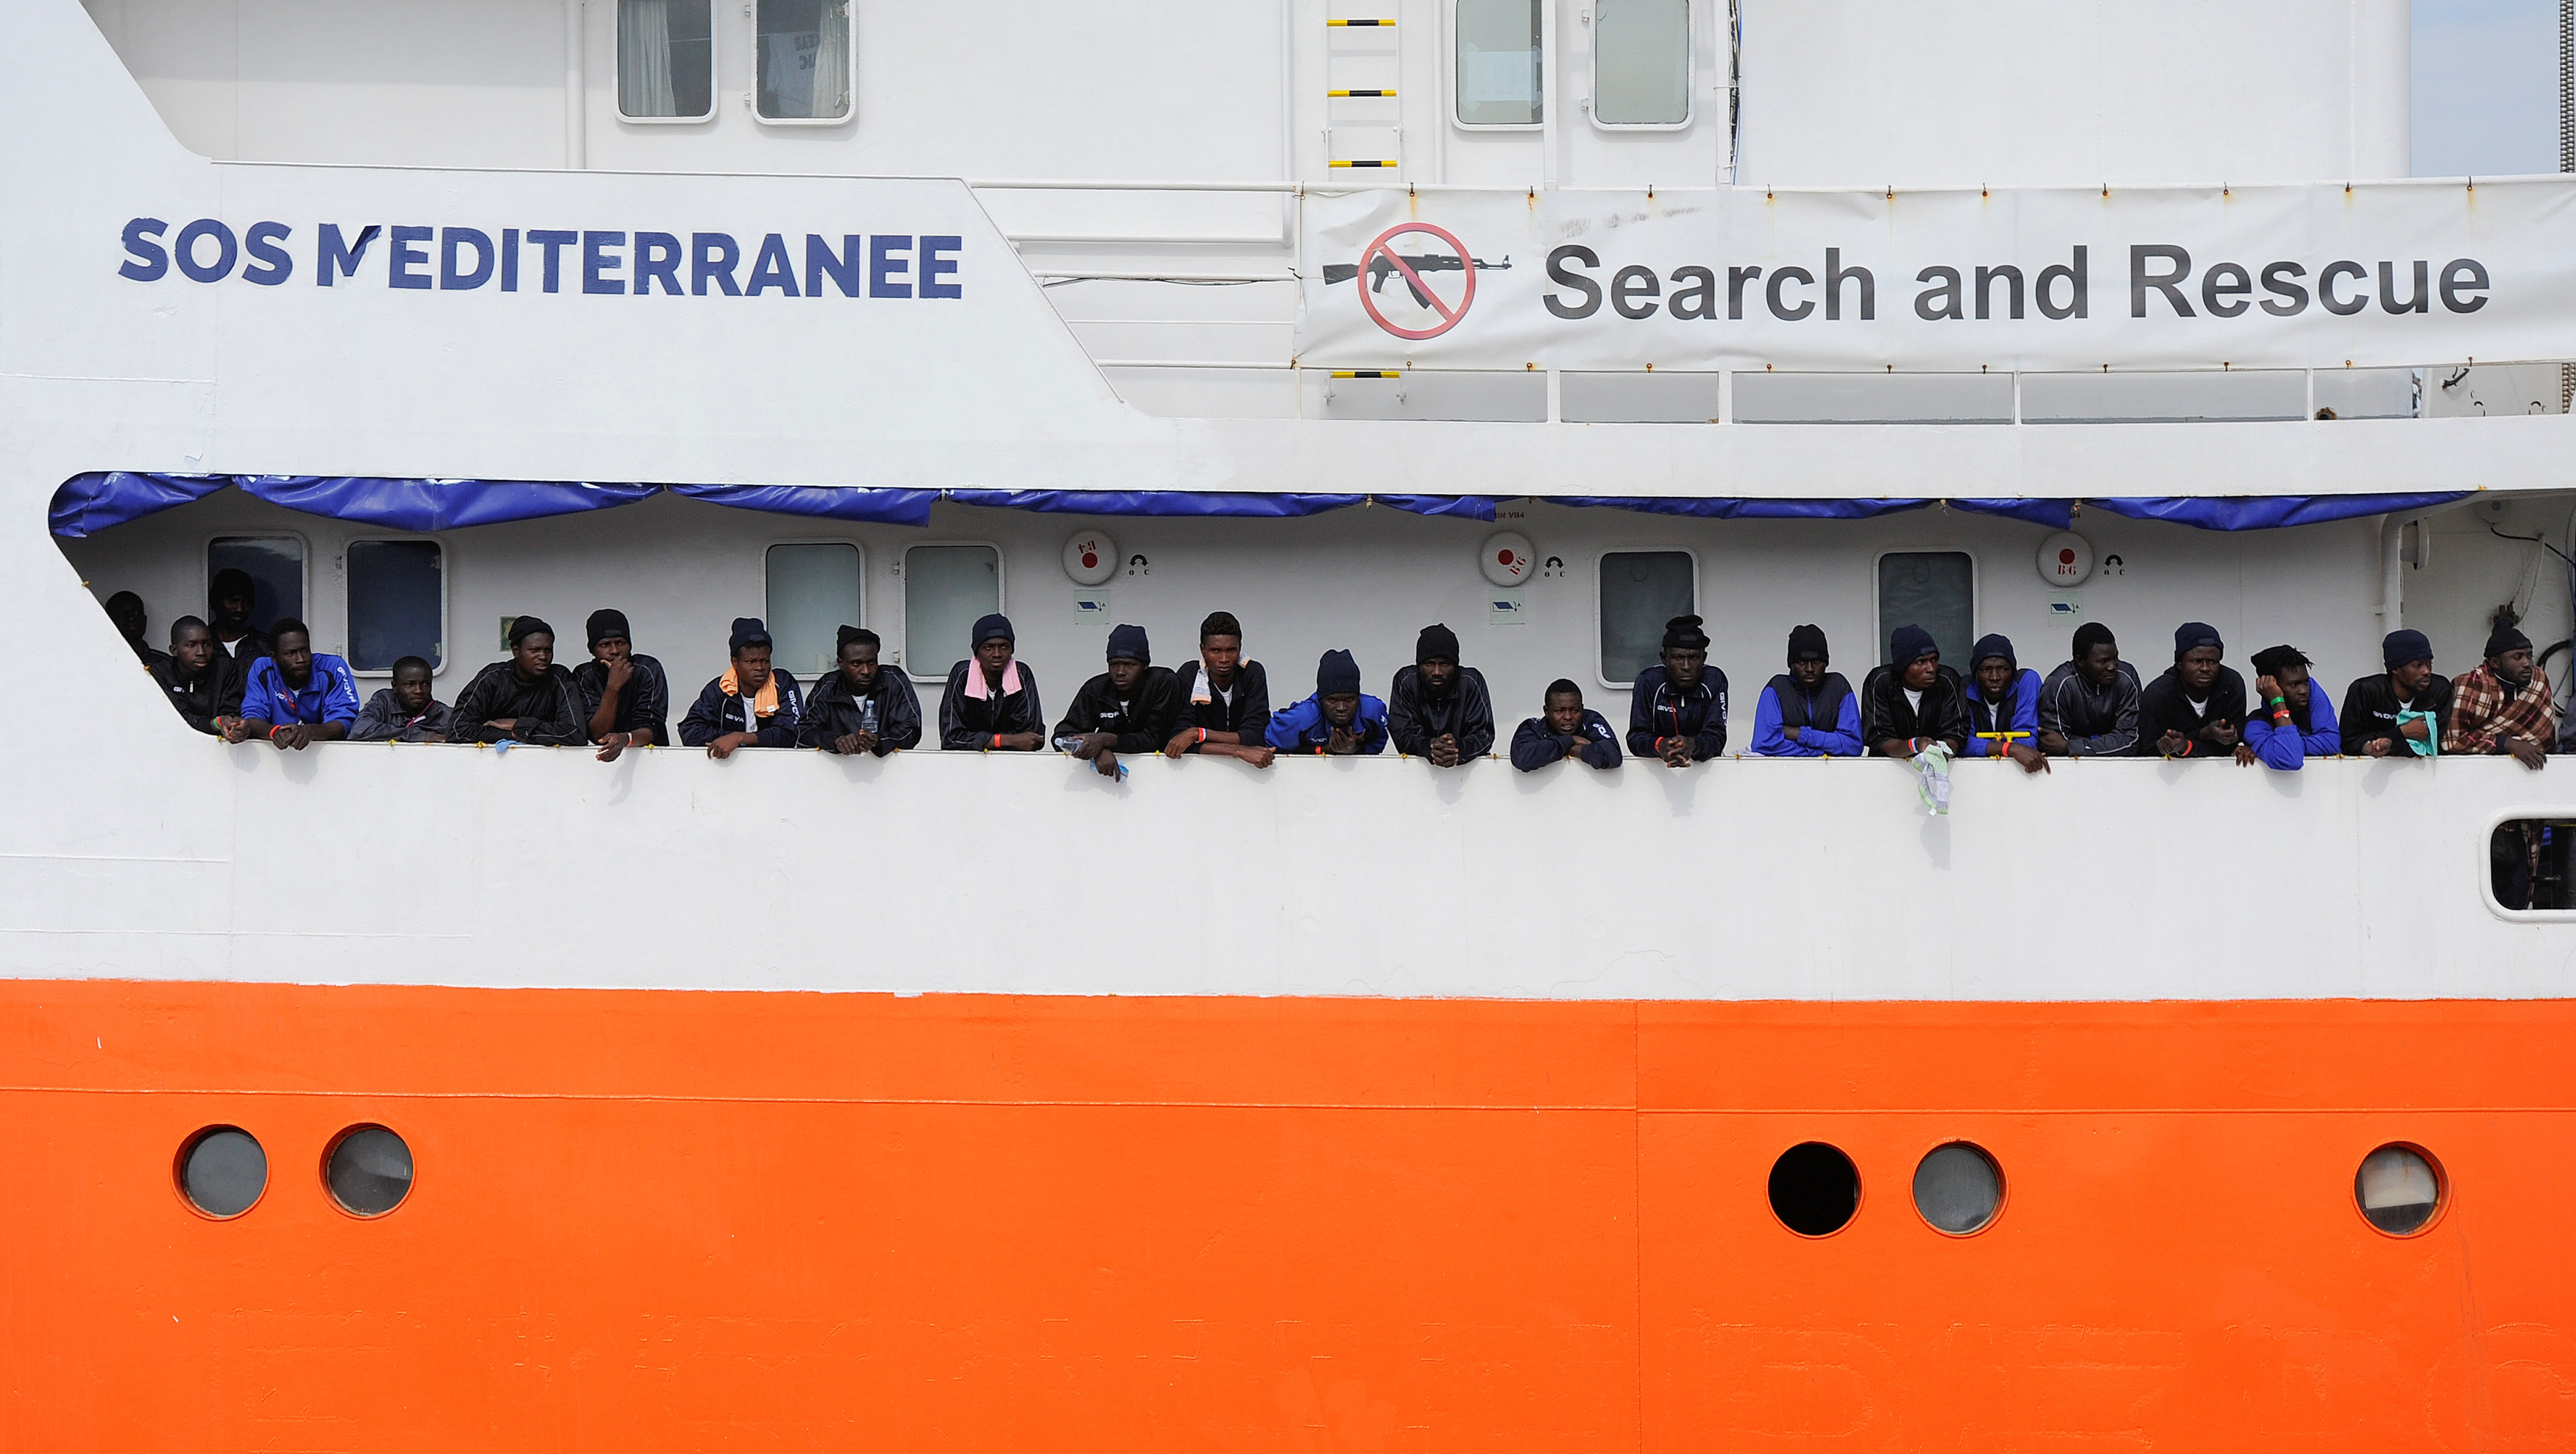 La embarcación varada entre Italia y Malta, por no tener puertos donde desembarcar, transporta a 629 migrantes rescatados en la zona de Libia.